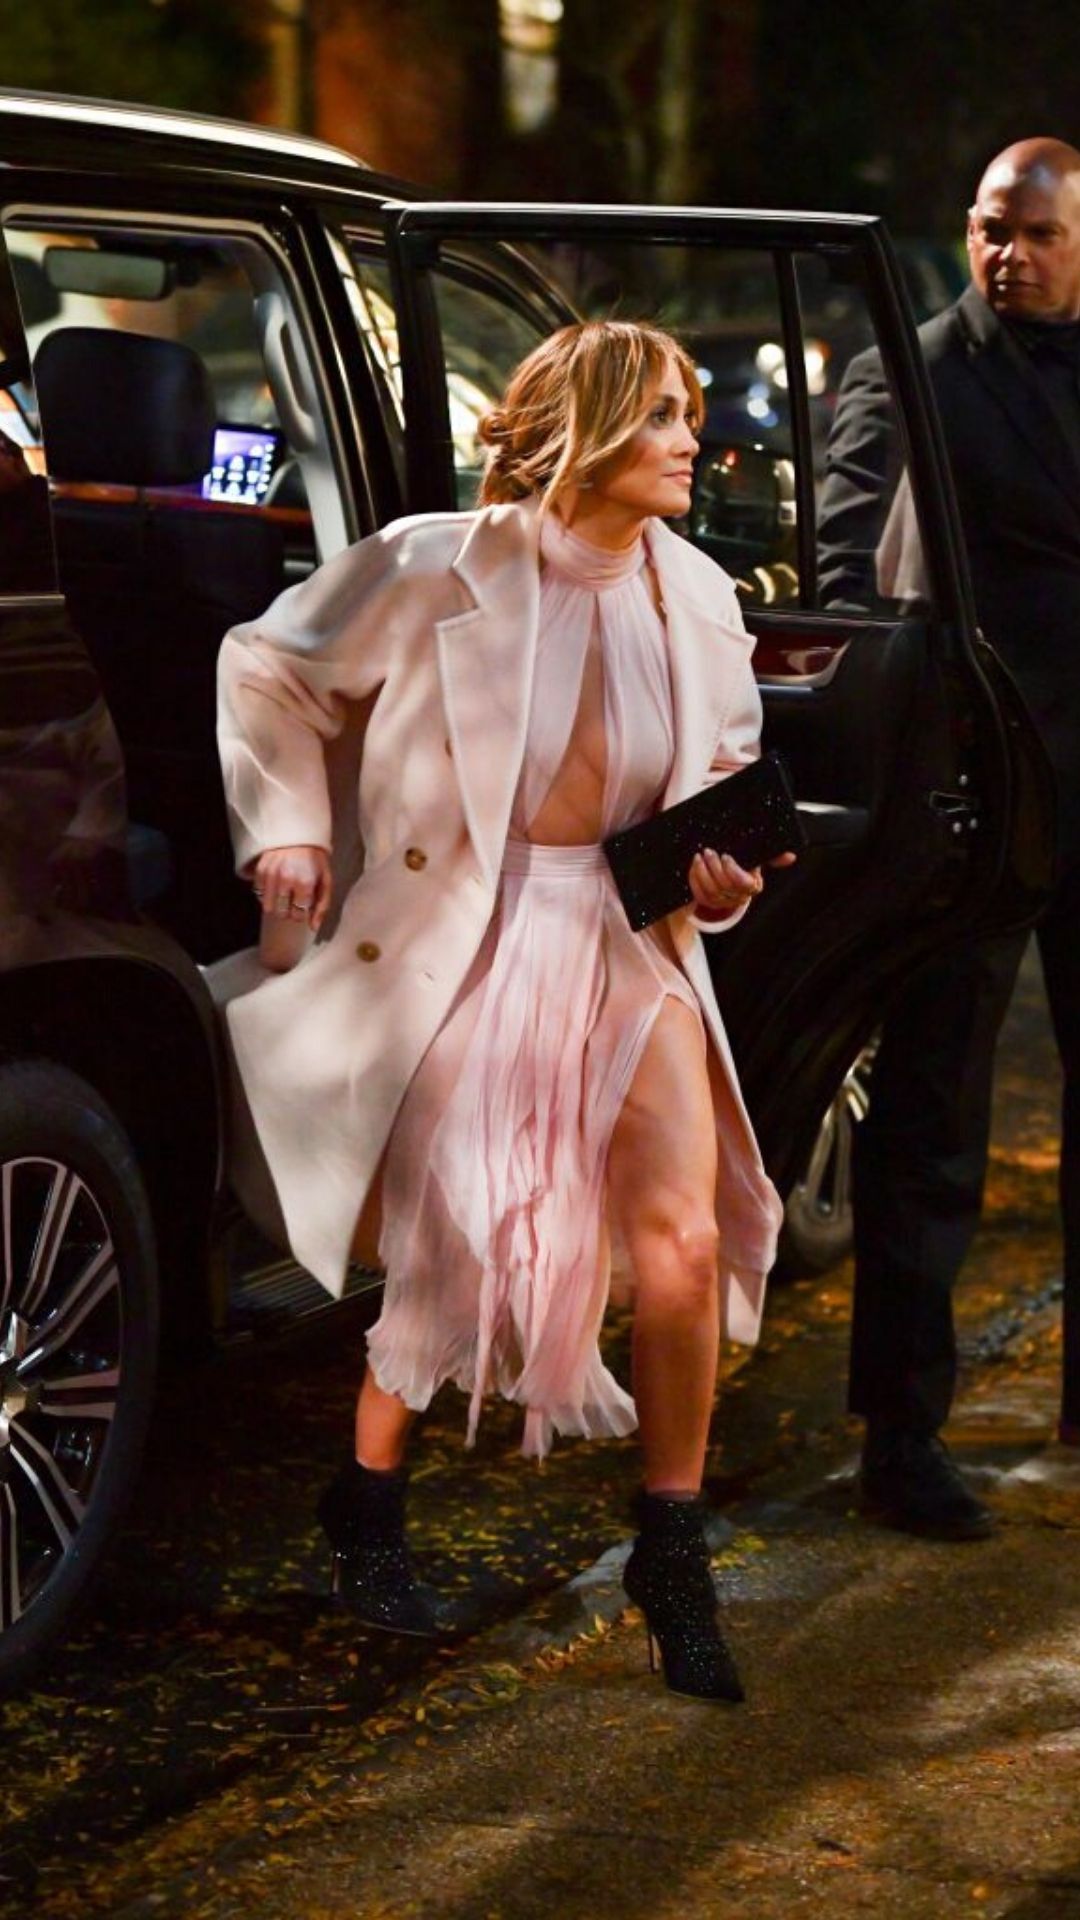 Versace - Jennifer Lopez chose a blush pink #Versace Signature